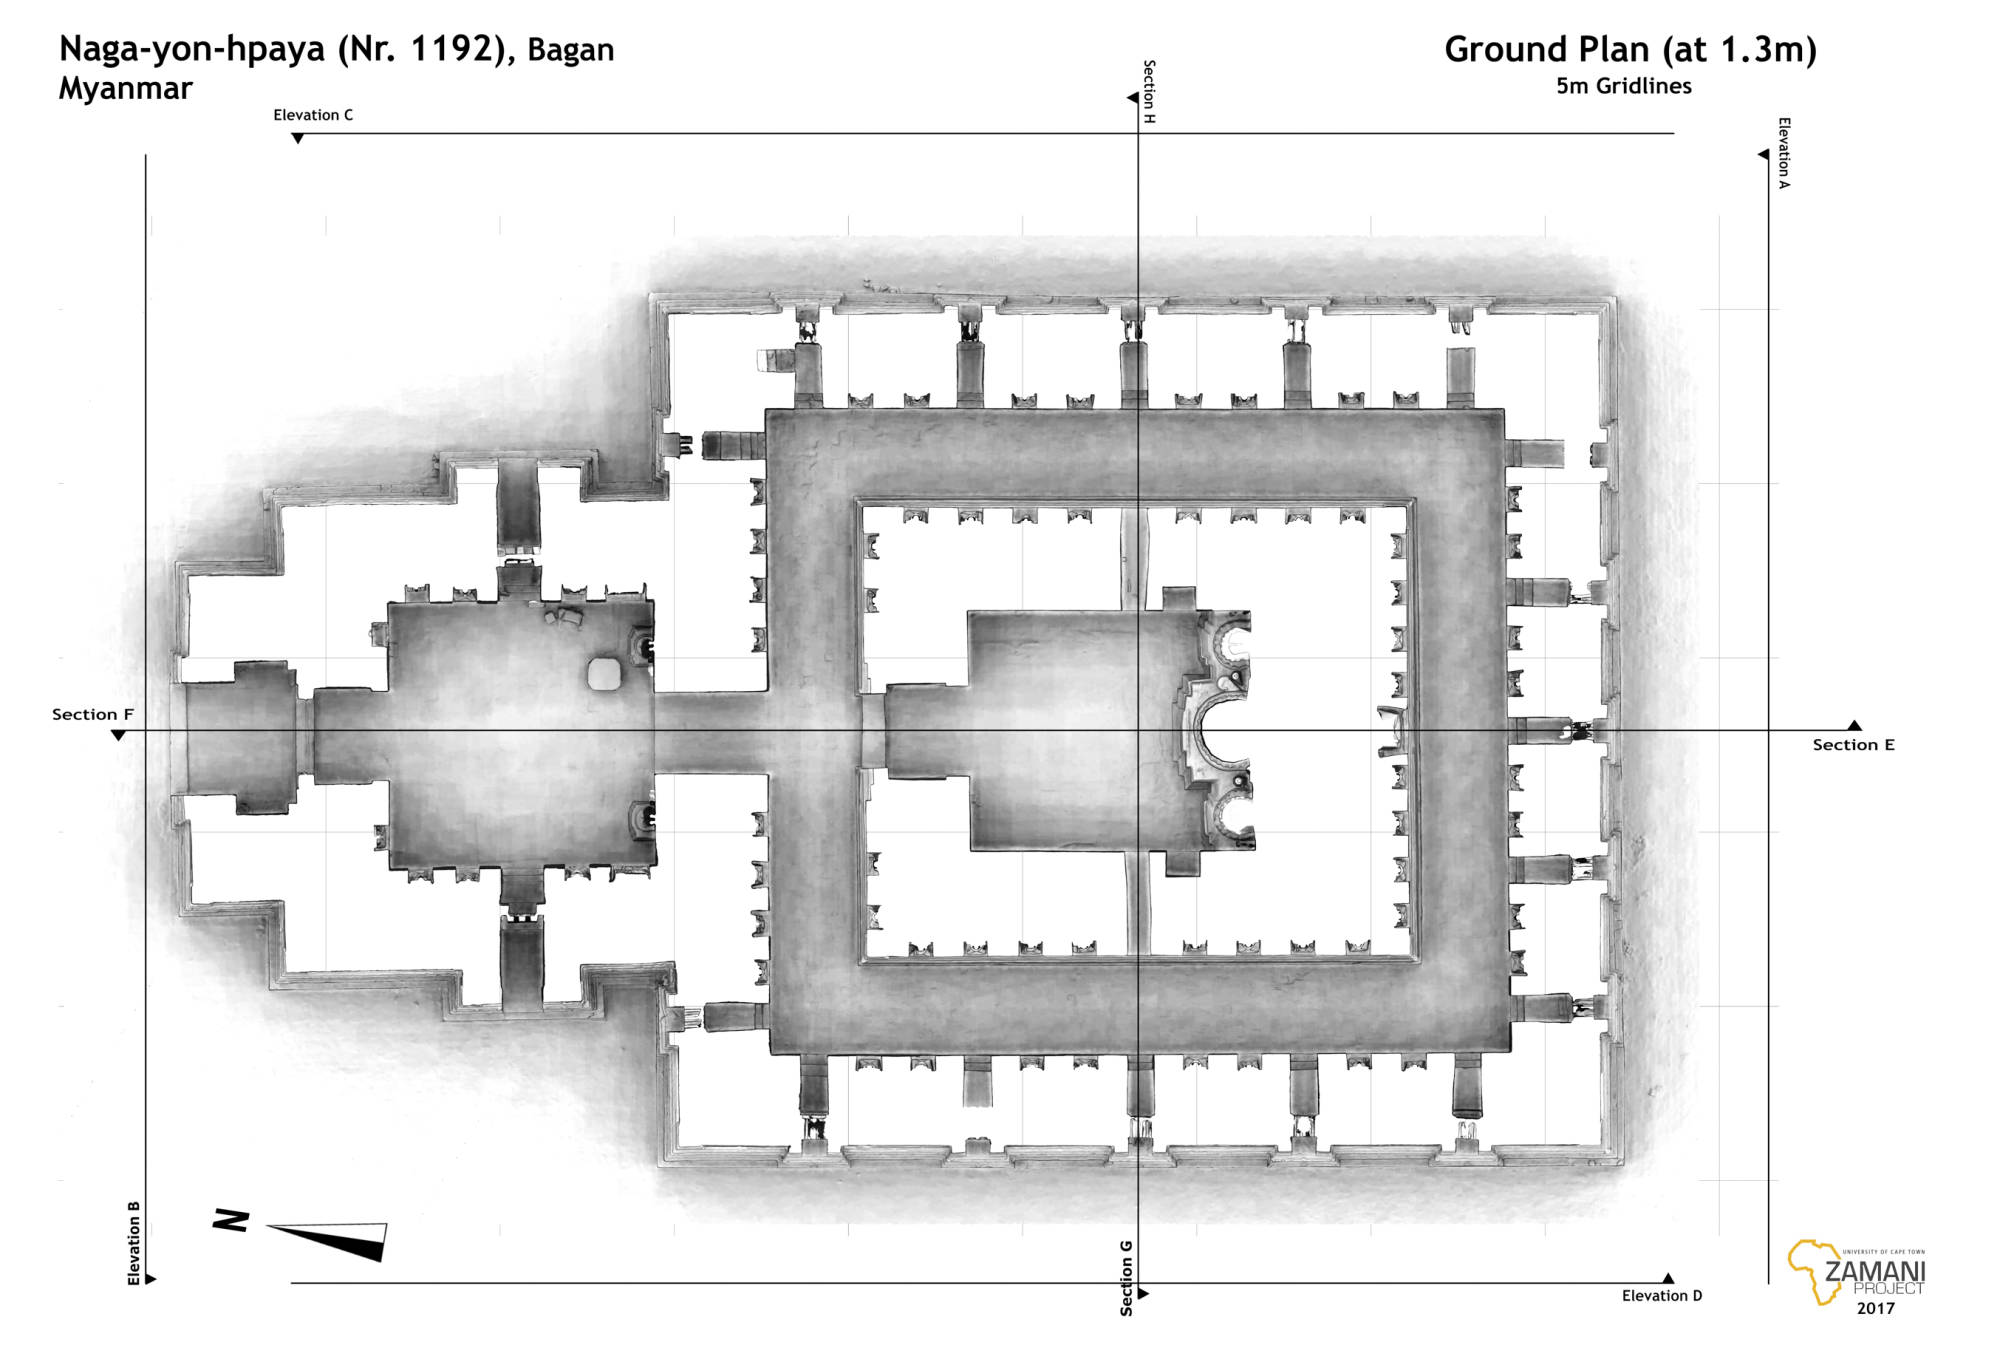 Ground Plan of Sula-mani-hu-hpaya